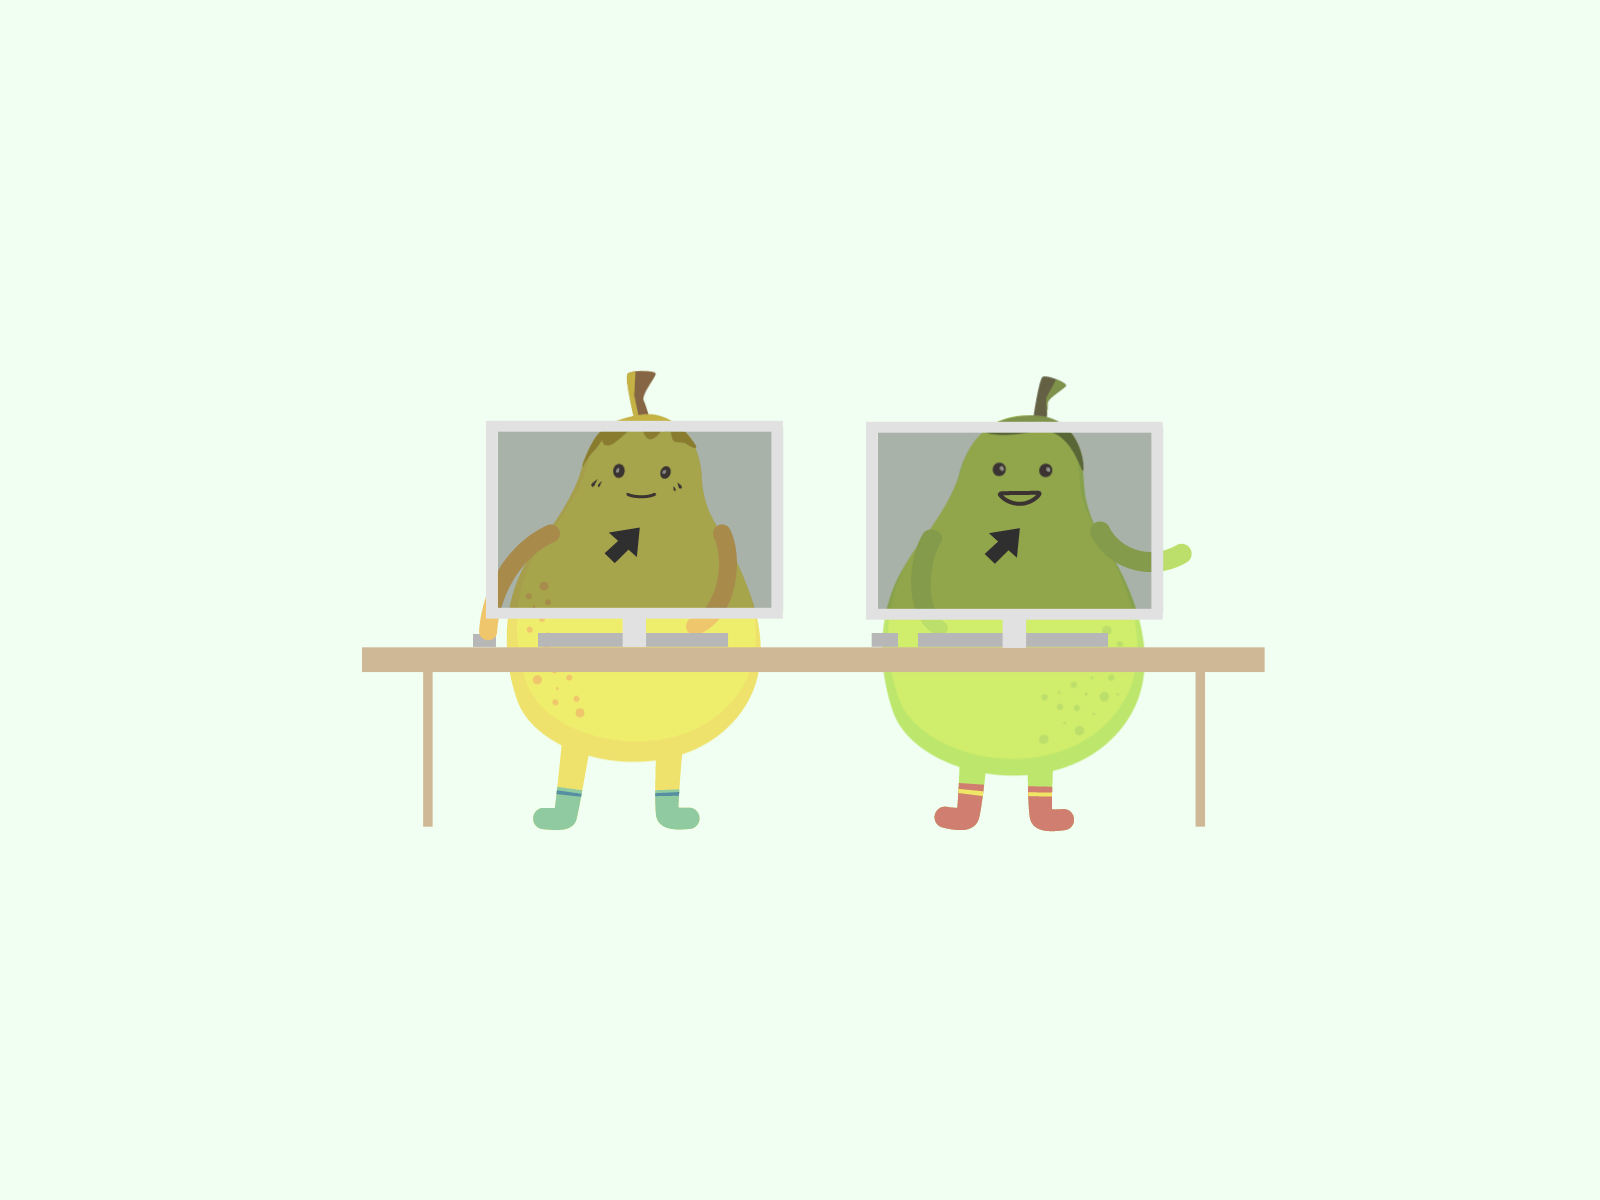 Pairing Pears pair programming